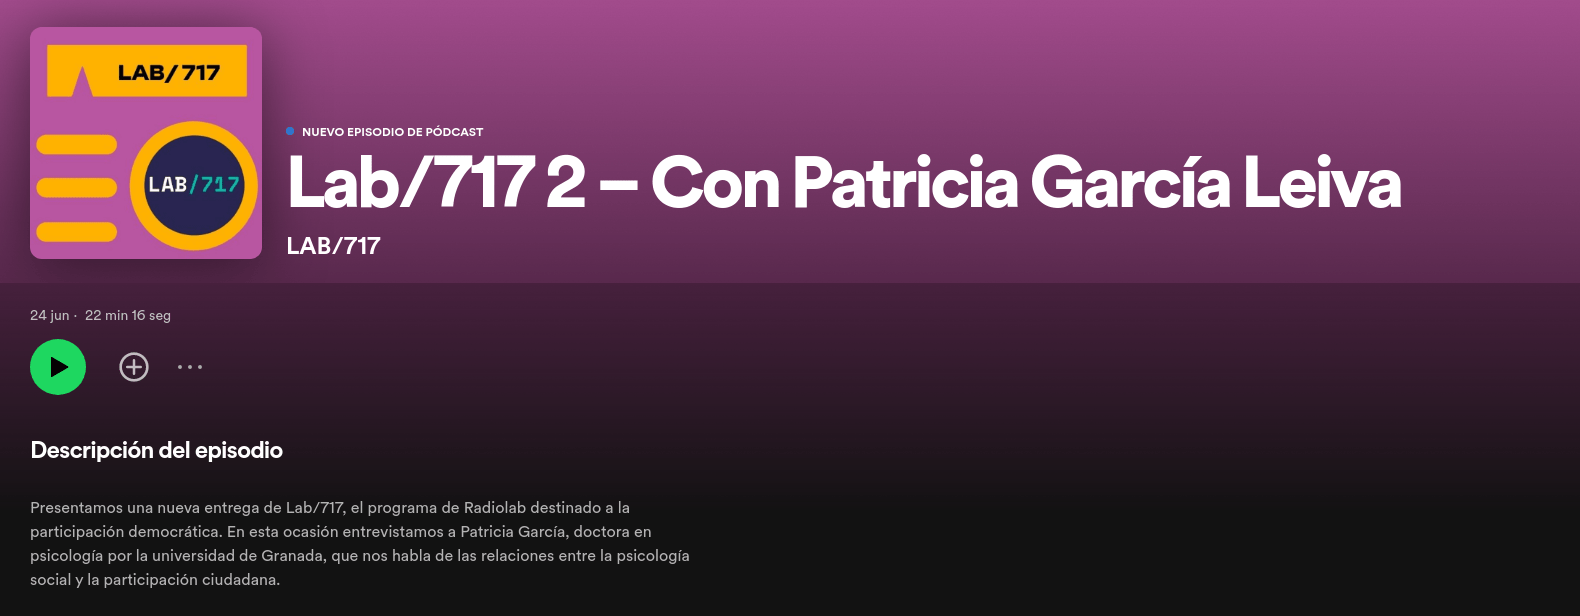 Imagen de la noticia Podcast Lab/717 – Relación entre la psicología social y la participación ciudadana, con Patricia García